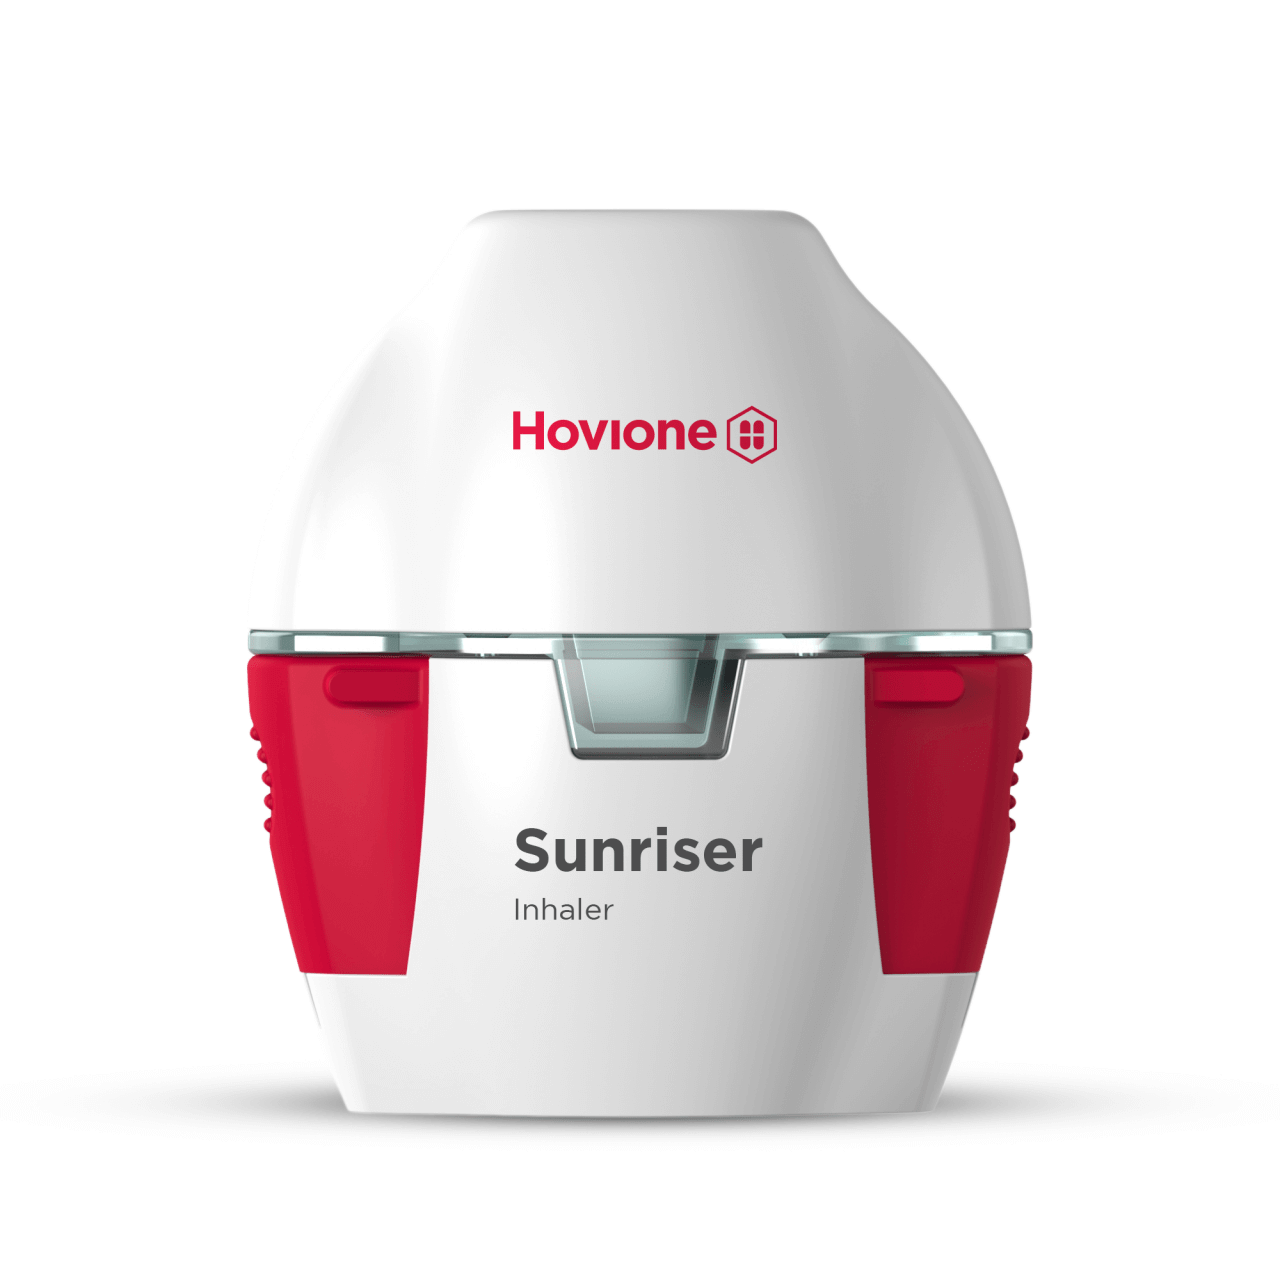 Sunriser DPI device | Hovione